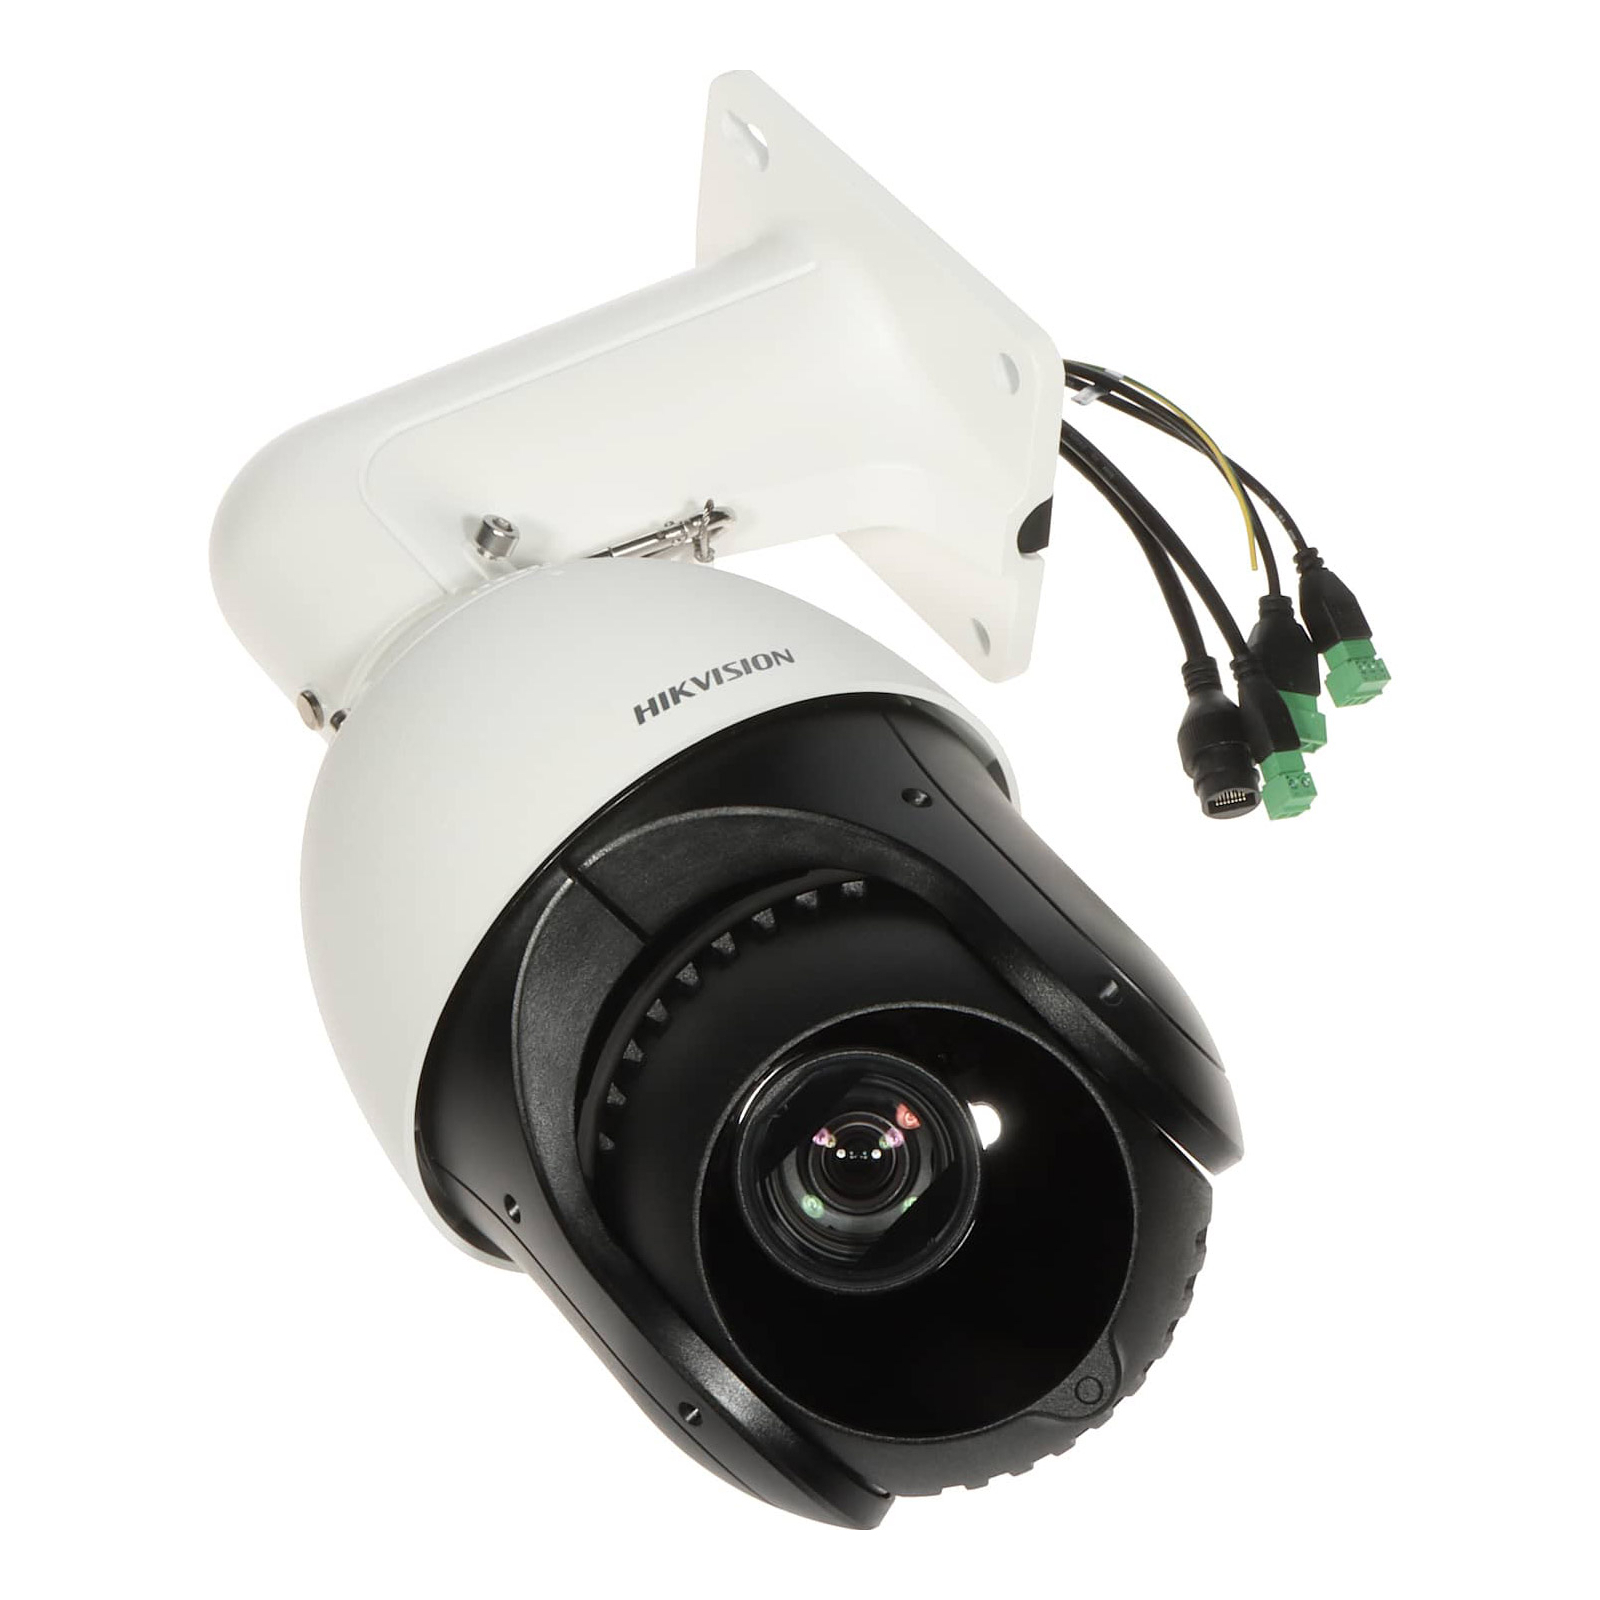 Камера видеонаблюдения Hikvision DS-2DE4415IW-DE(T5) изображение 3